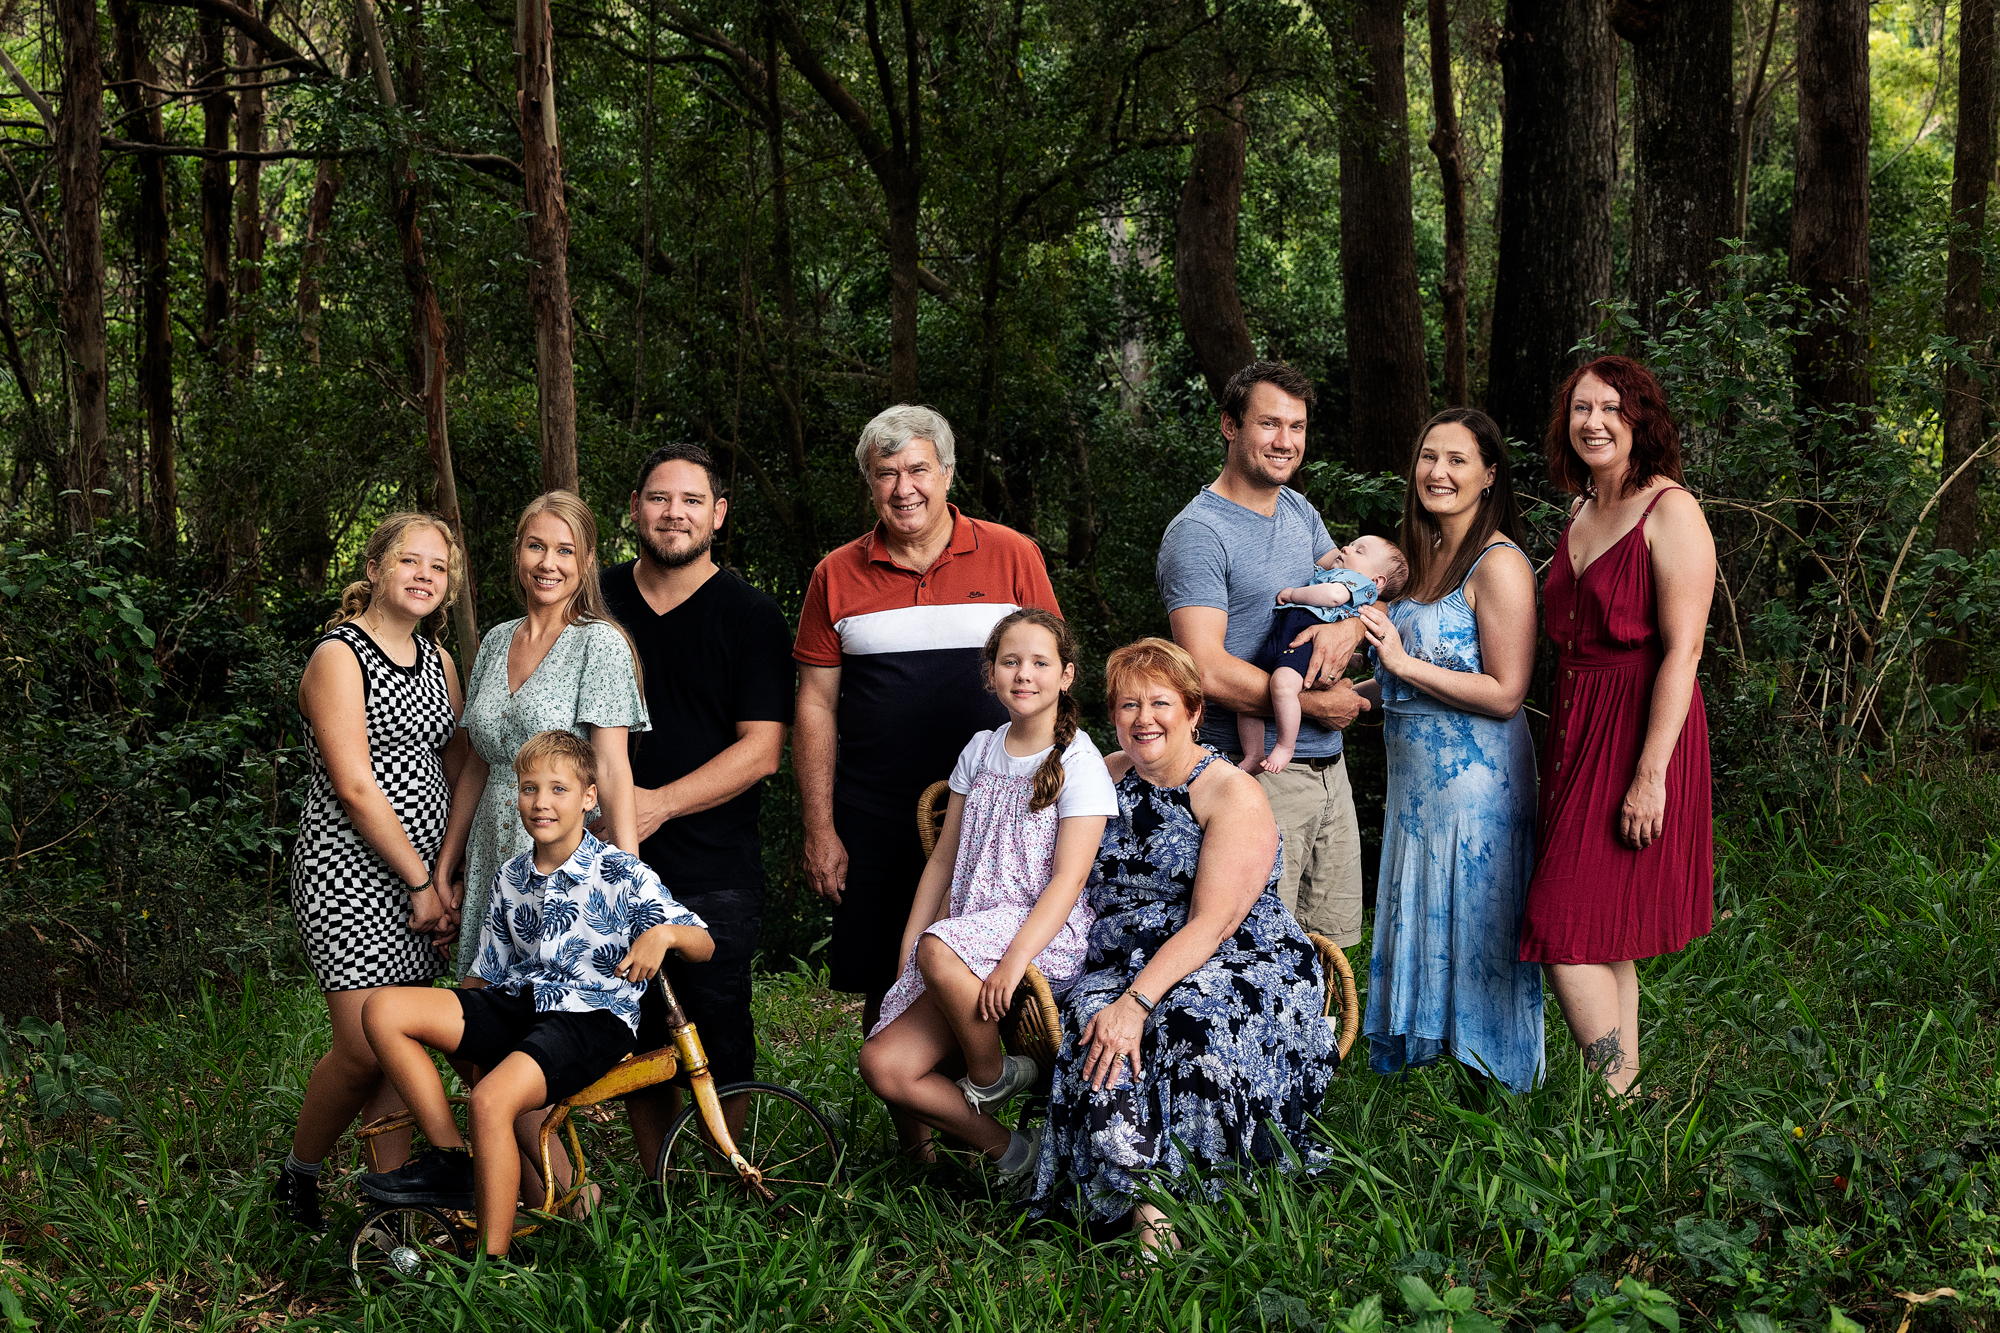 Bonnick Family – Generational Portrait